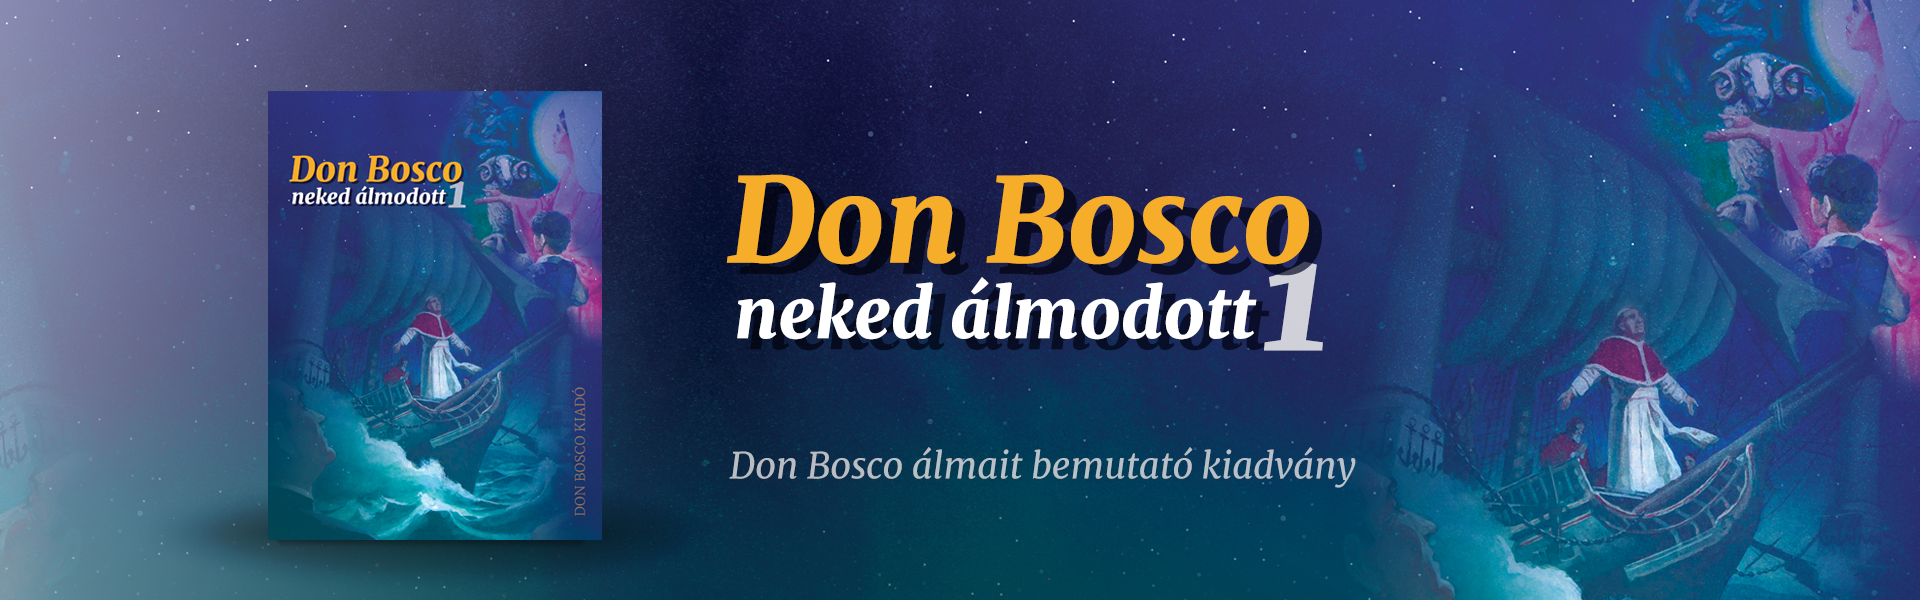 Don Bosco Neked álmodott slide